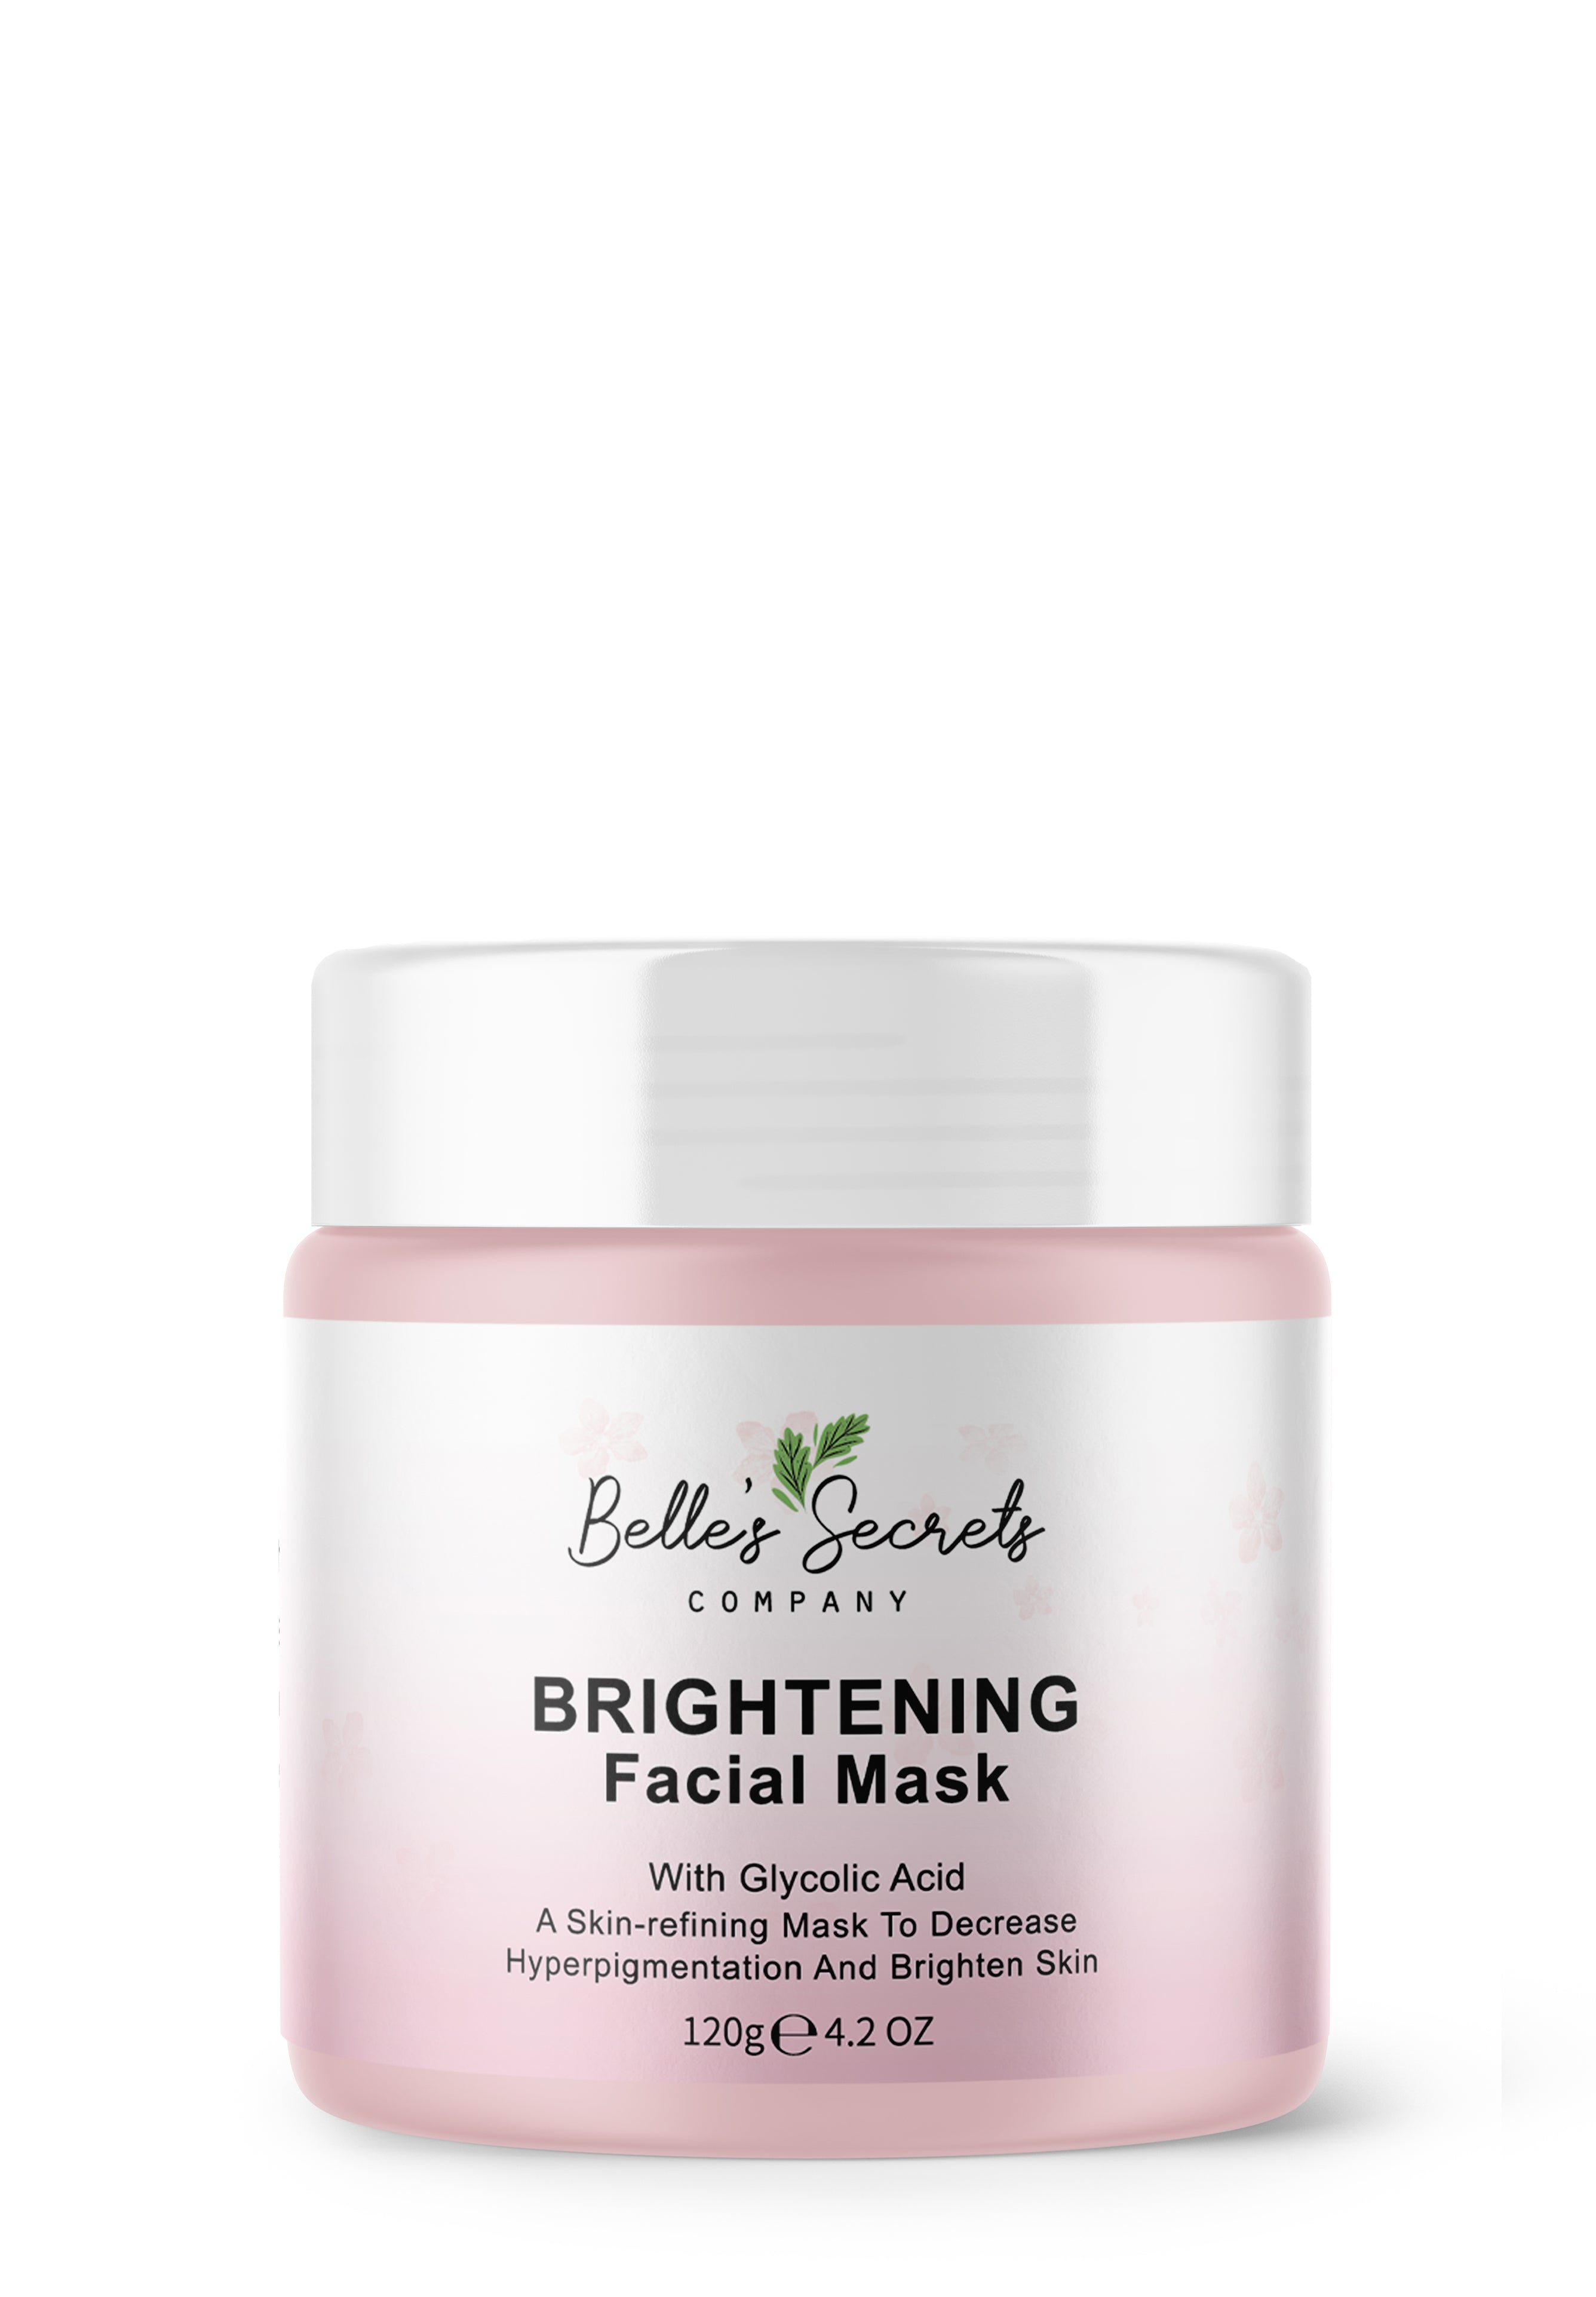 Brightening Facial Mask